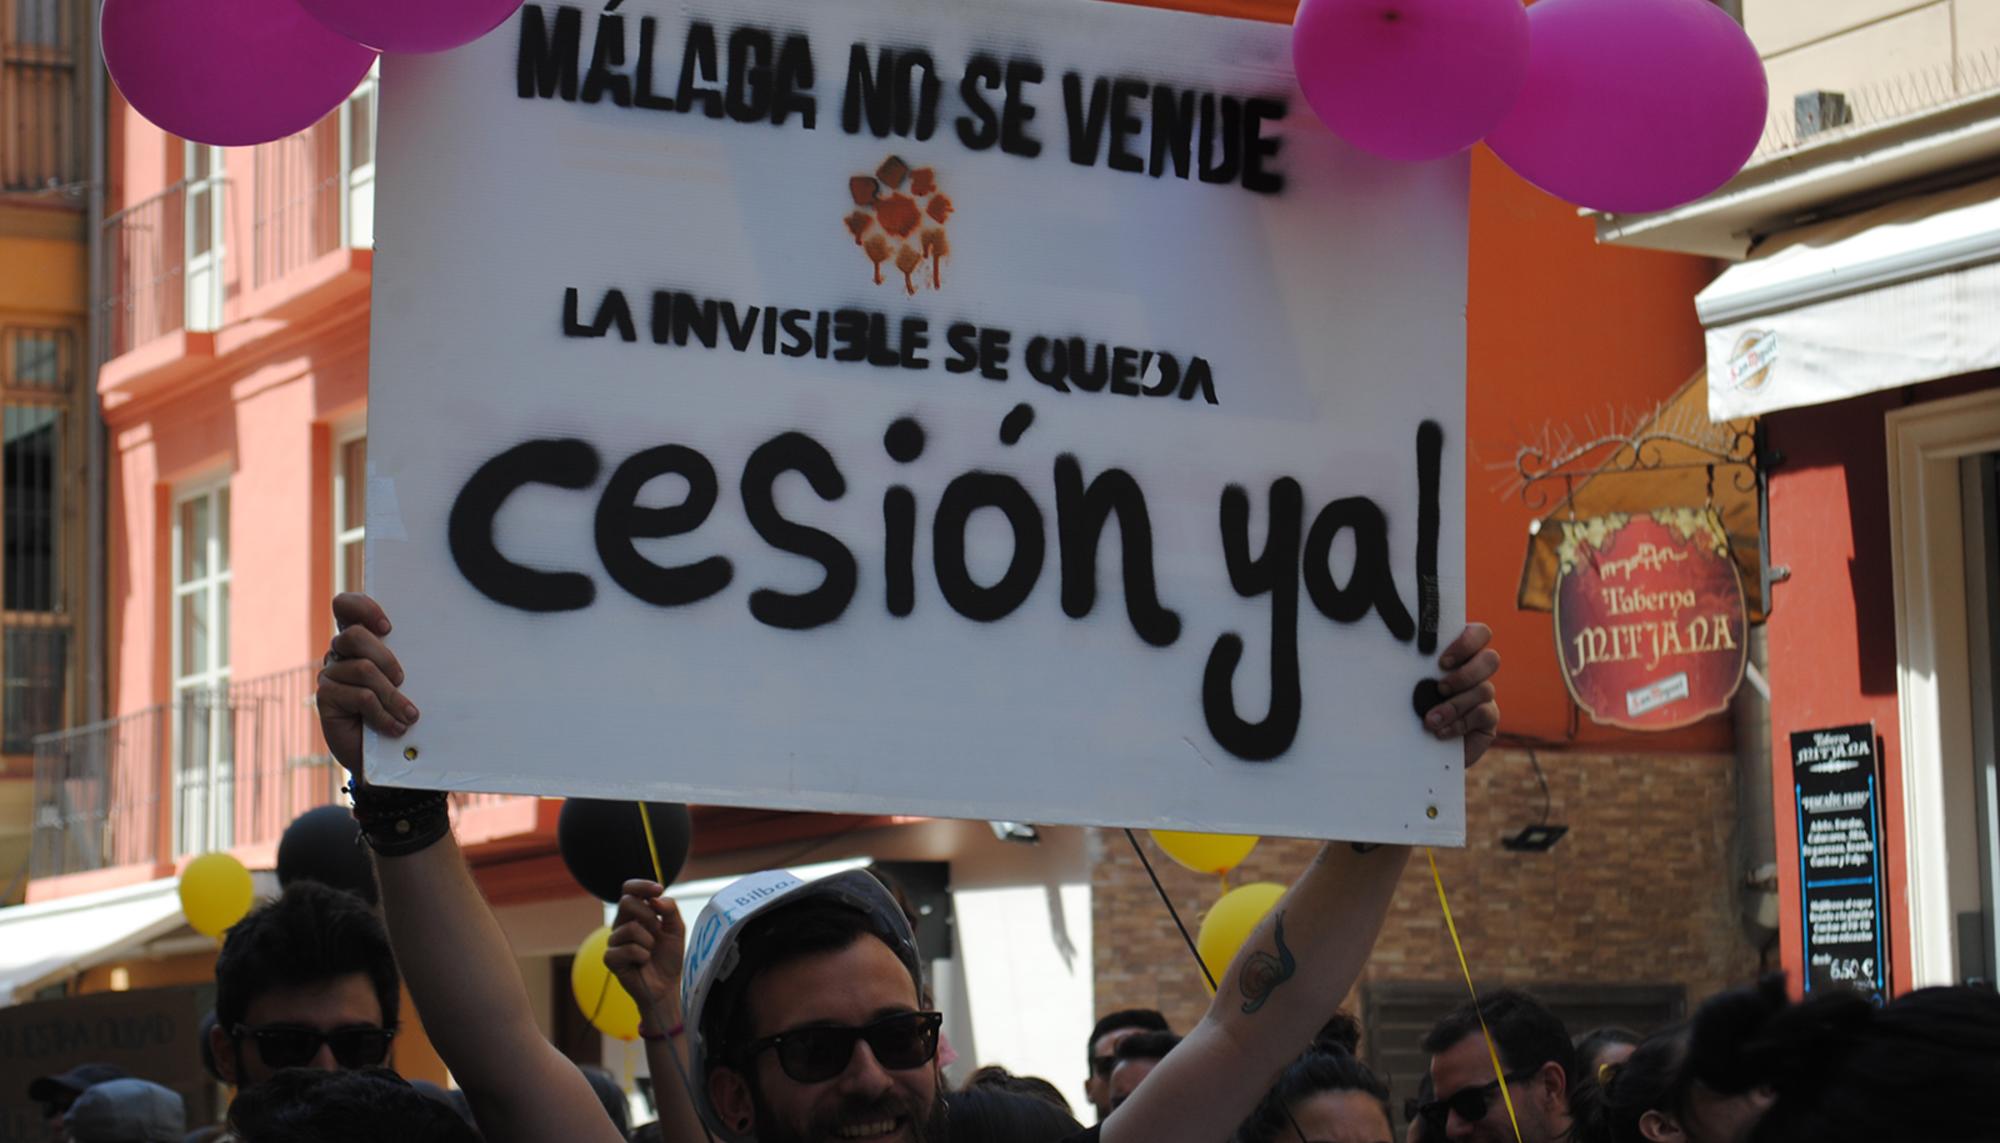 Málaga no se vende Invisible